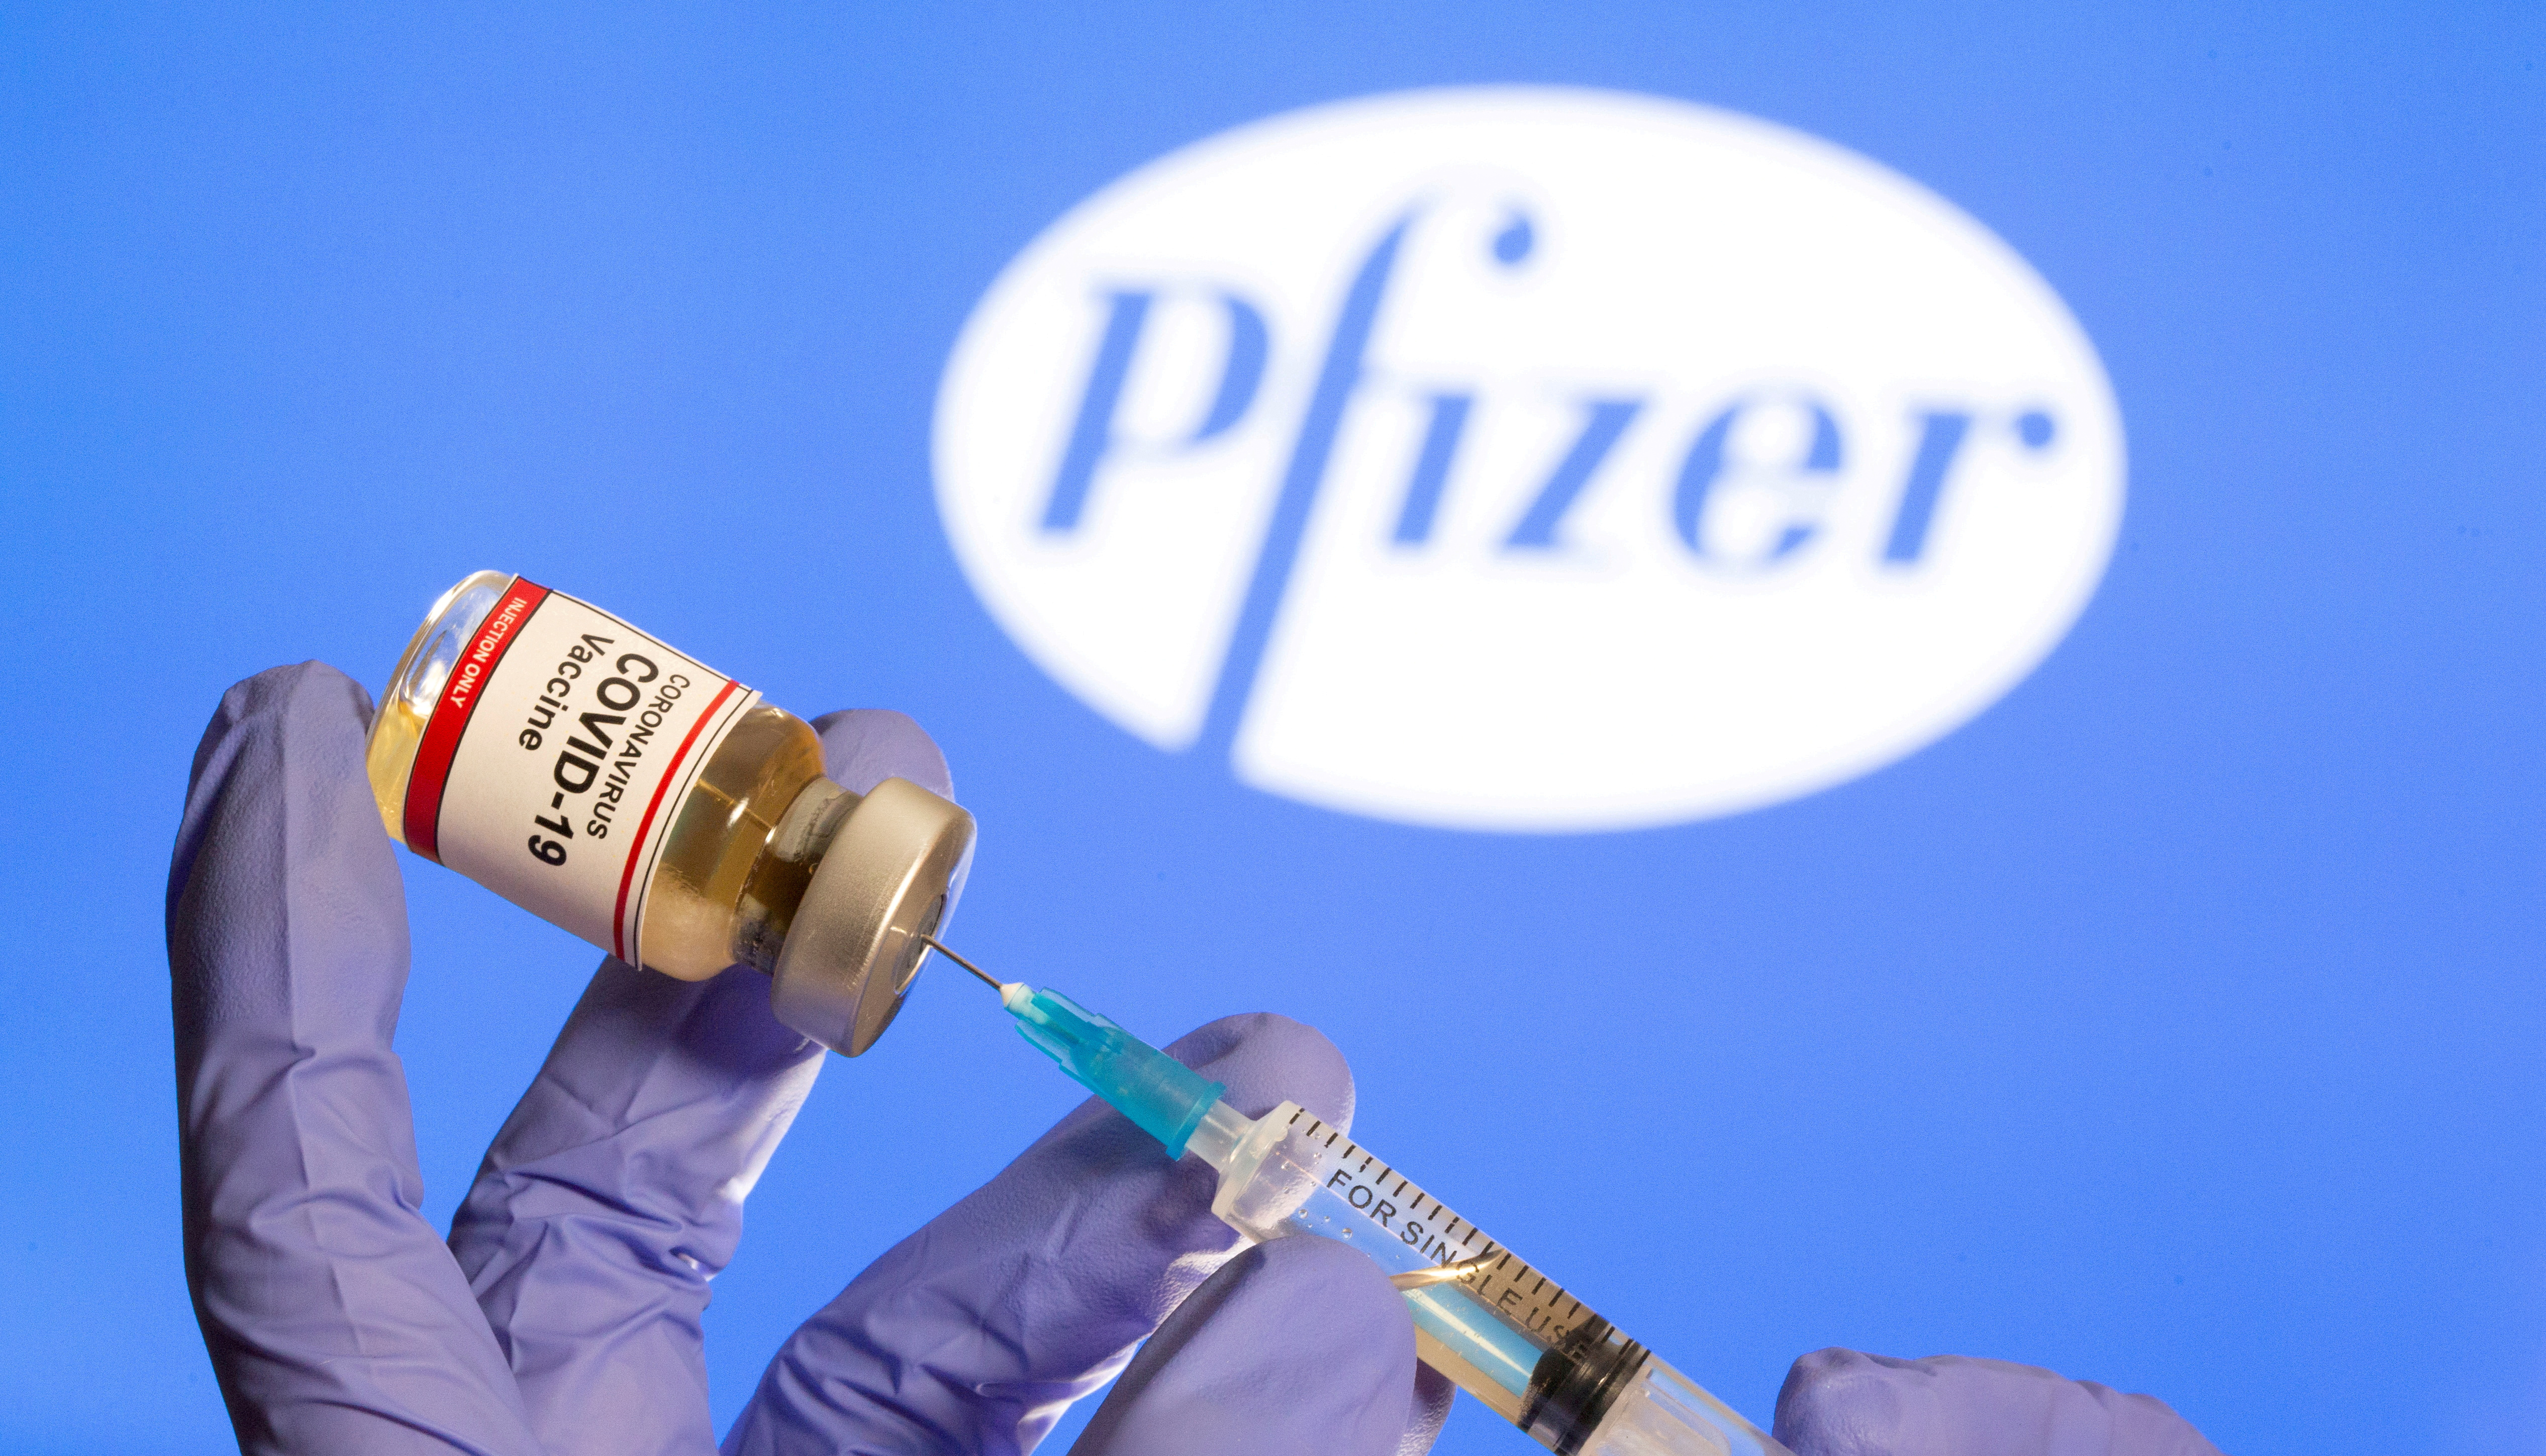 La vacuna de Pfizer-Biontech está basada en la tecnología del ARN mensajero, que lleva instrucciones de ADN para que las células del cuerpo humano generen ciertas proteínas protectoras. La misma comenzó sus ensayos en Alemania a fines de abril y en EEUU a principios de mayo. (REUTERS/Dado Ruvic/File Photo/File Photo)